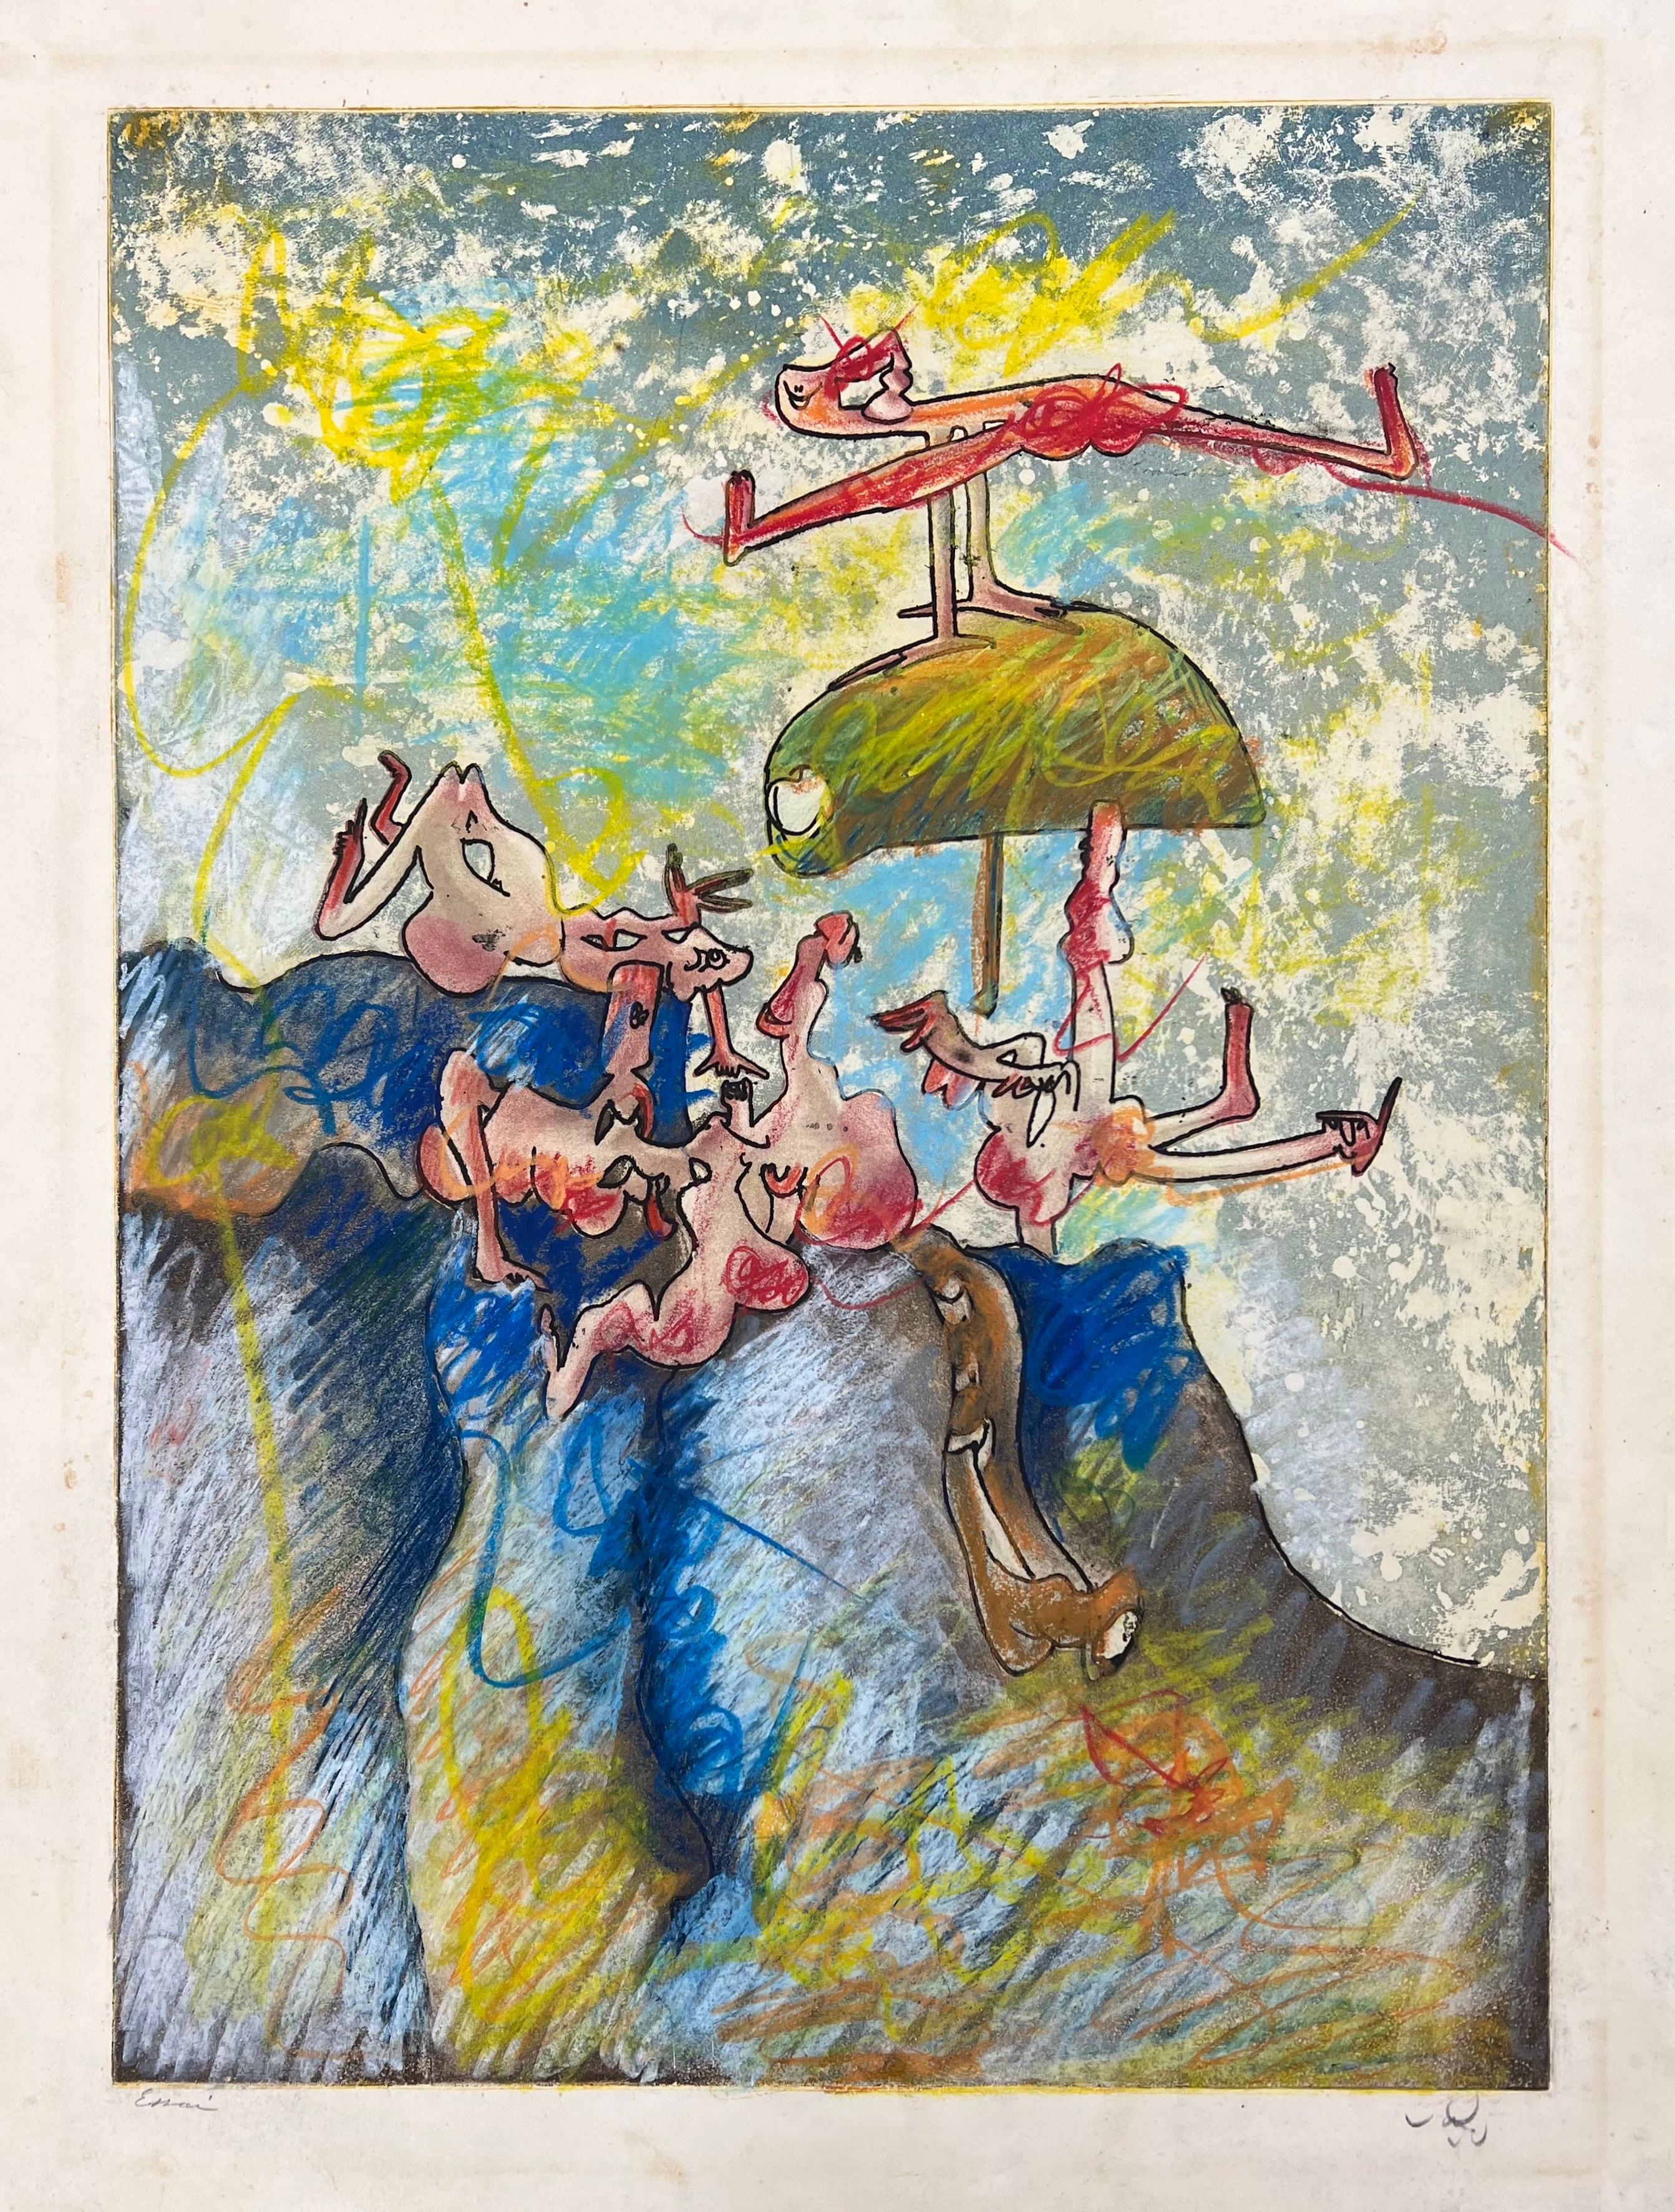 Roberto Sebastián Matta, "Feuilles ouvertes", 1971, etching & aquatint, signed